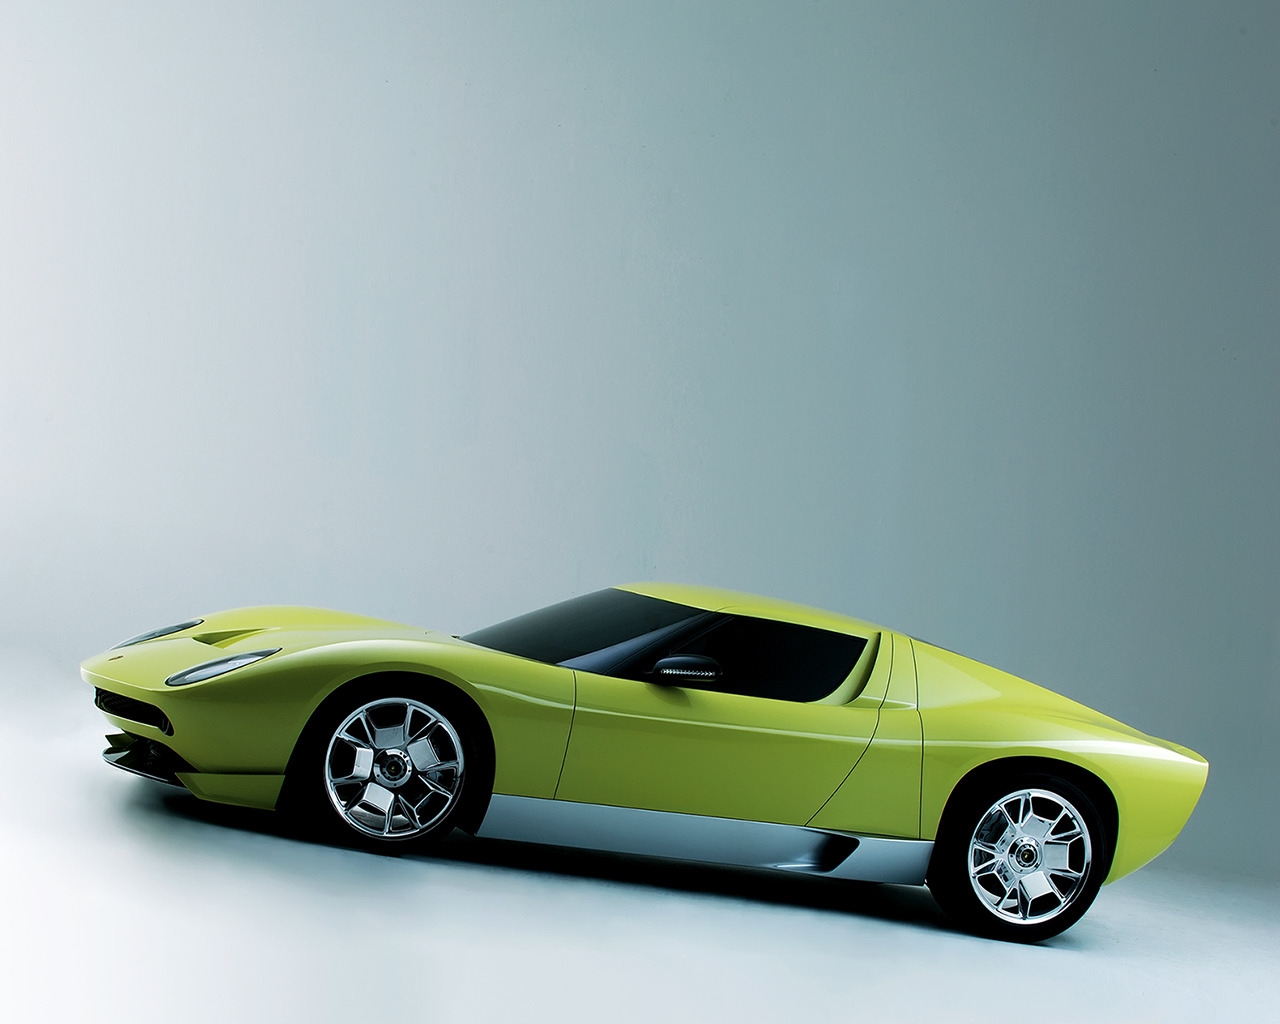 Lamborghini Miura Concept Side for 1280 x 1024 resolution